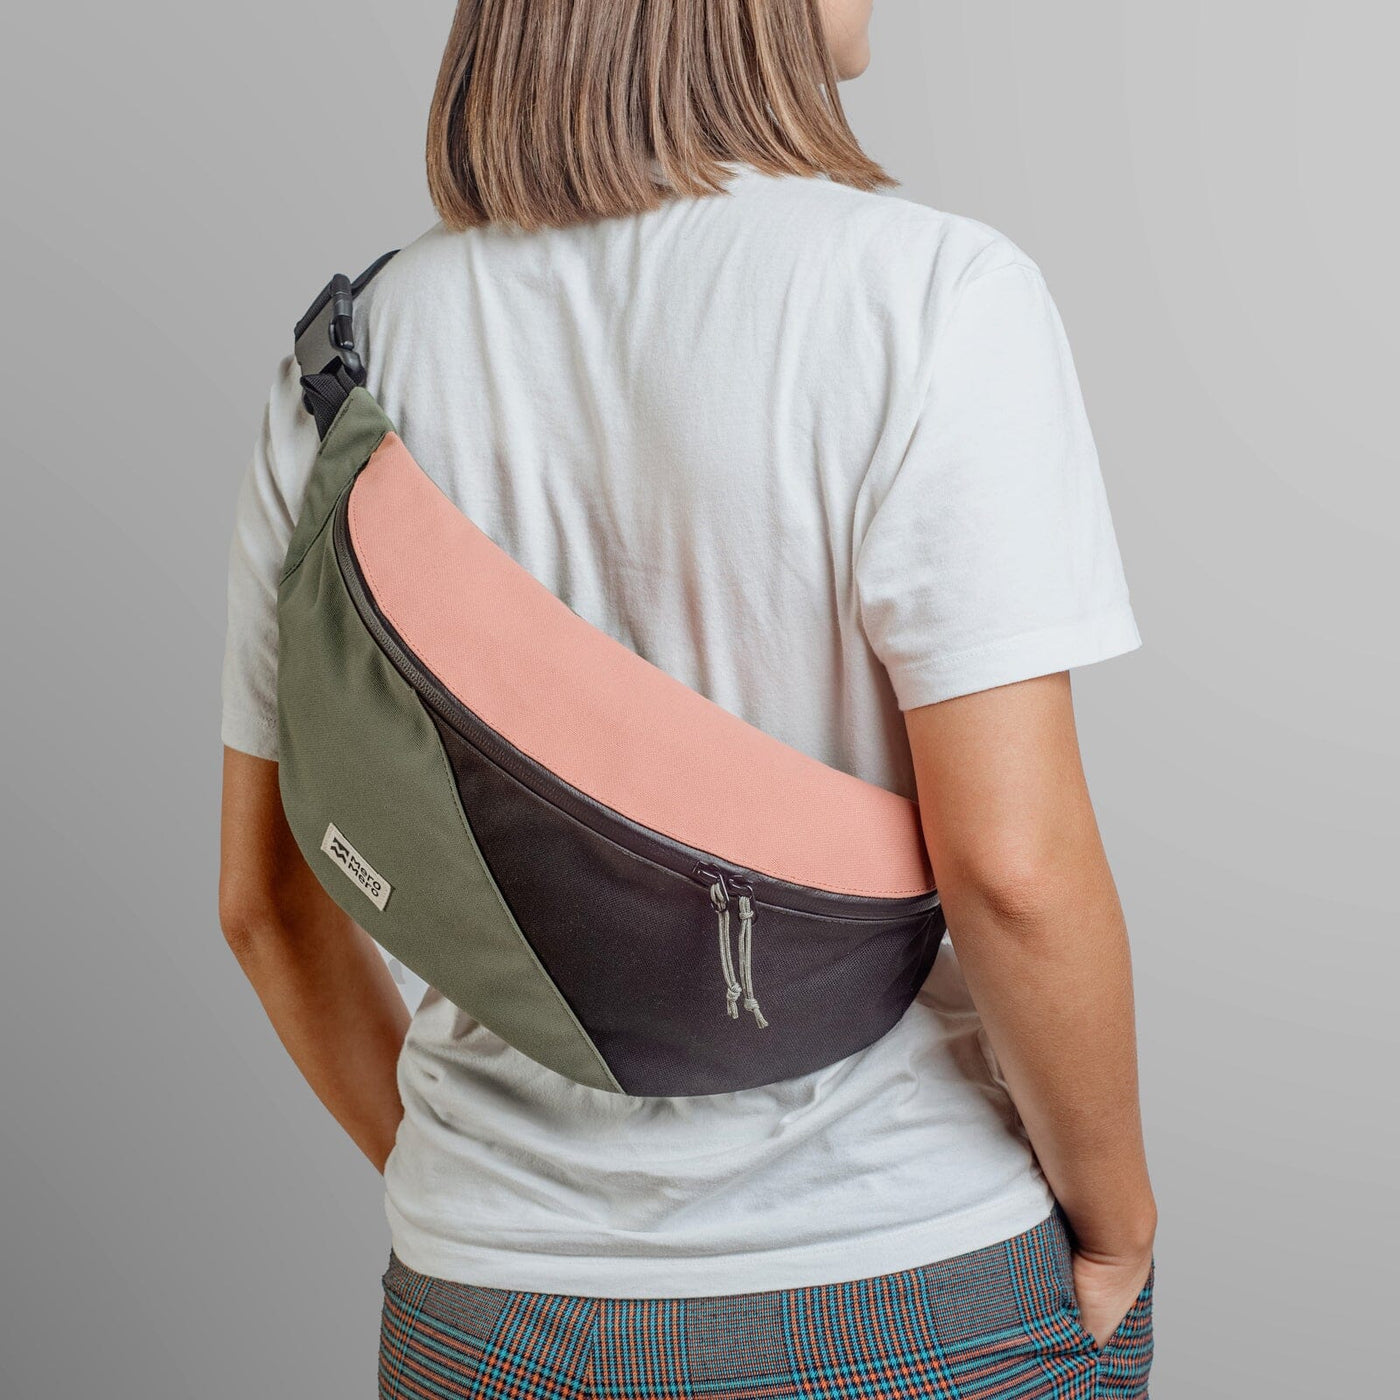 woman wearing mero mero hoian recycled bum bag as sling bag